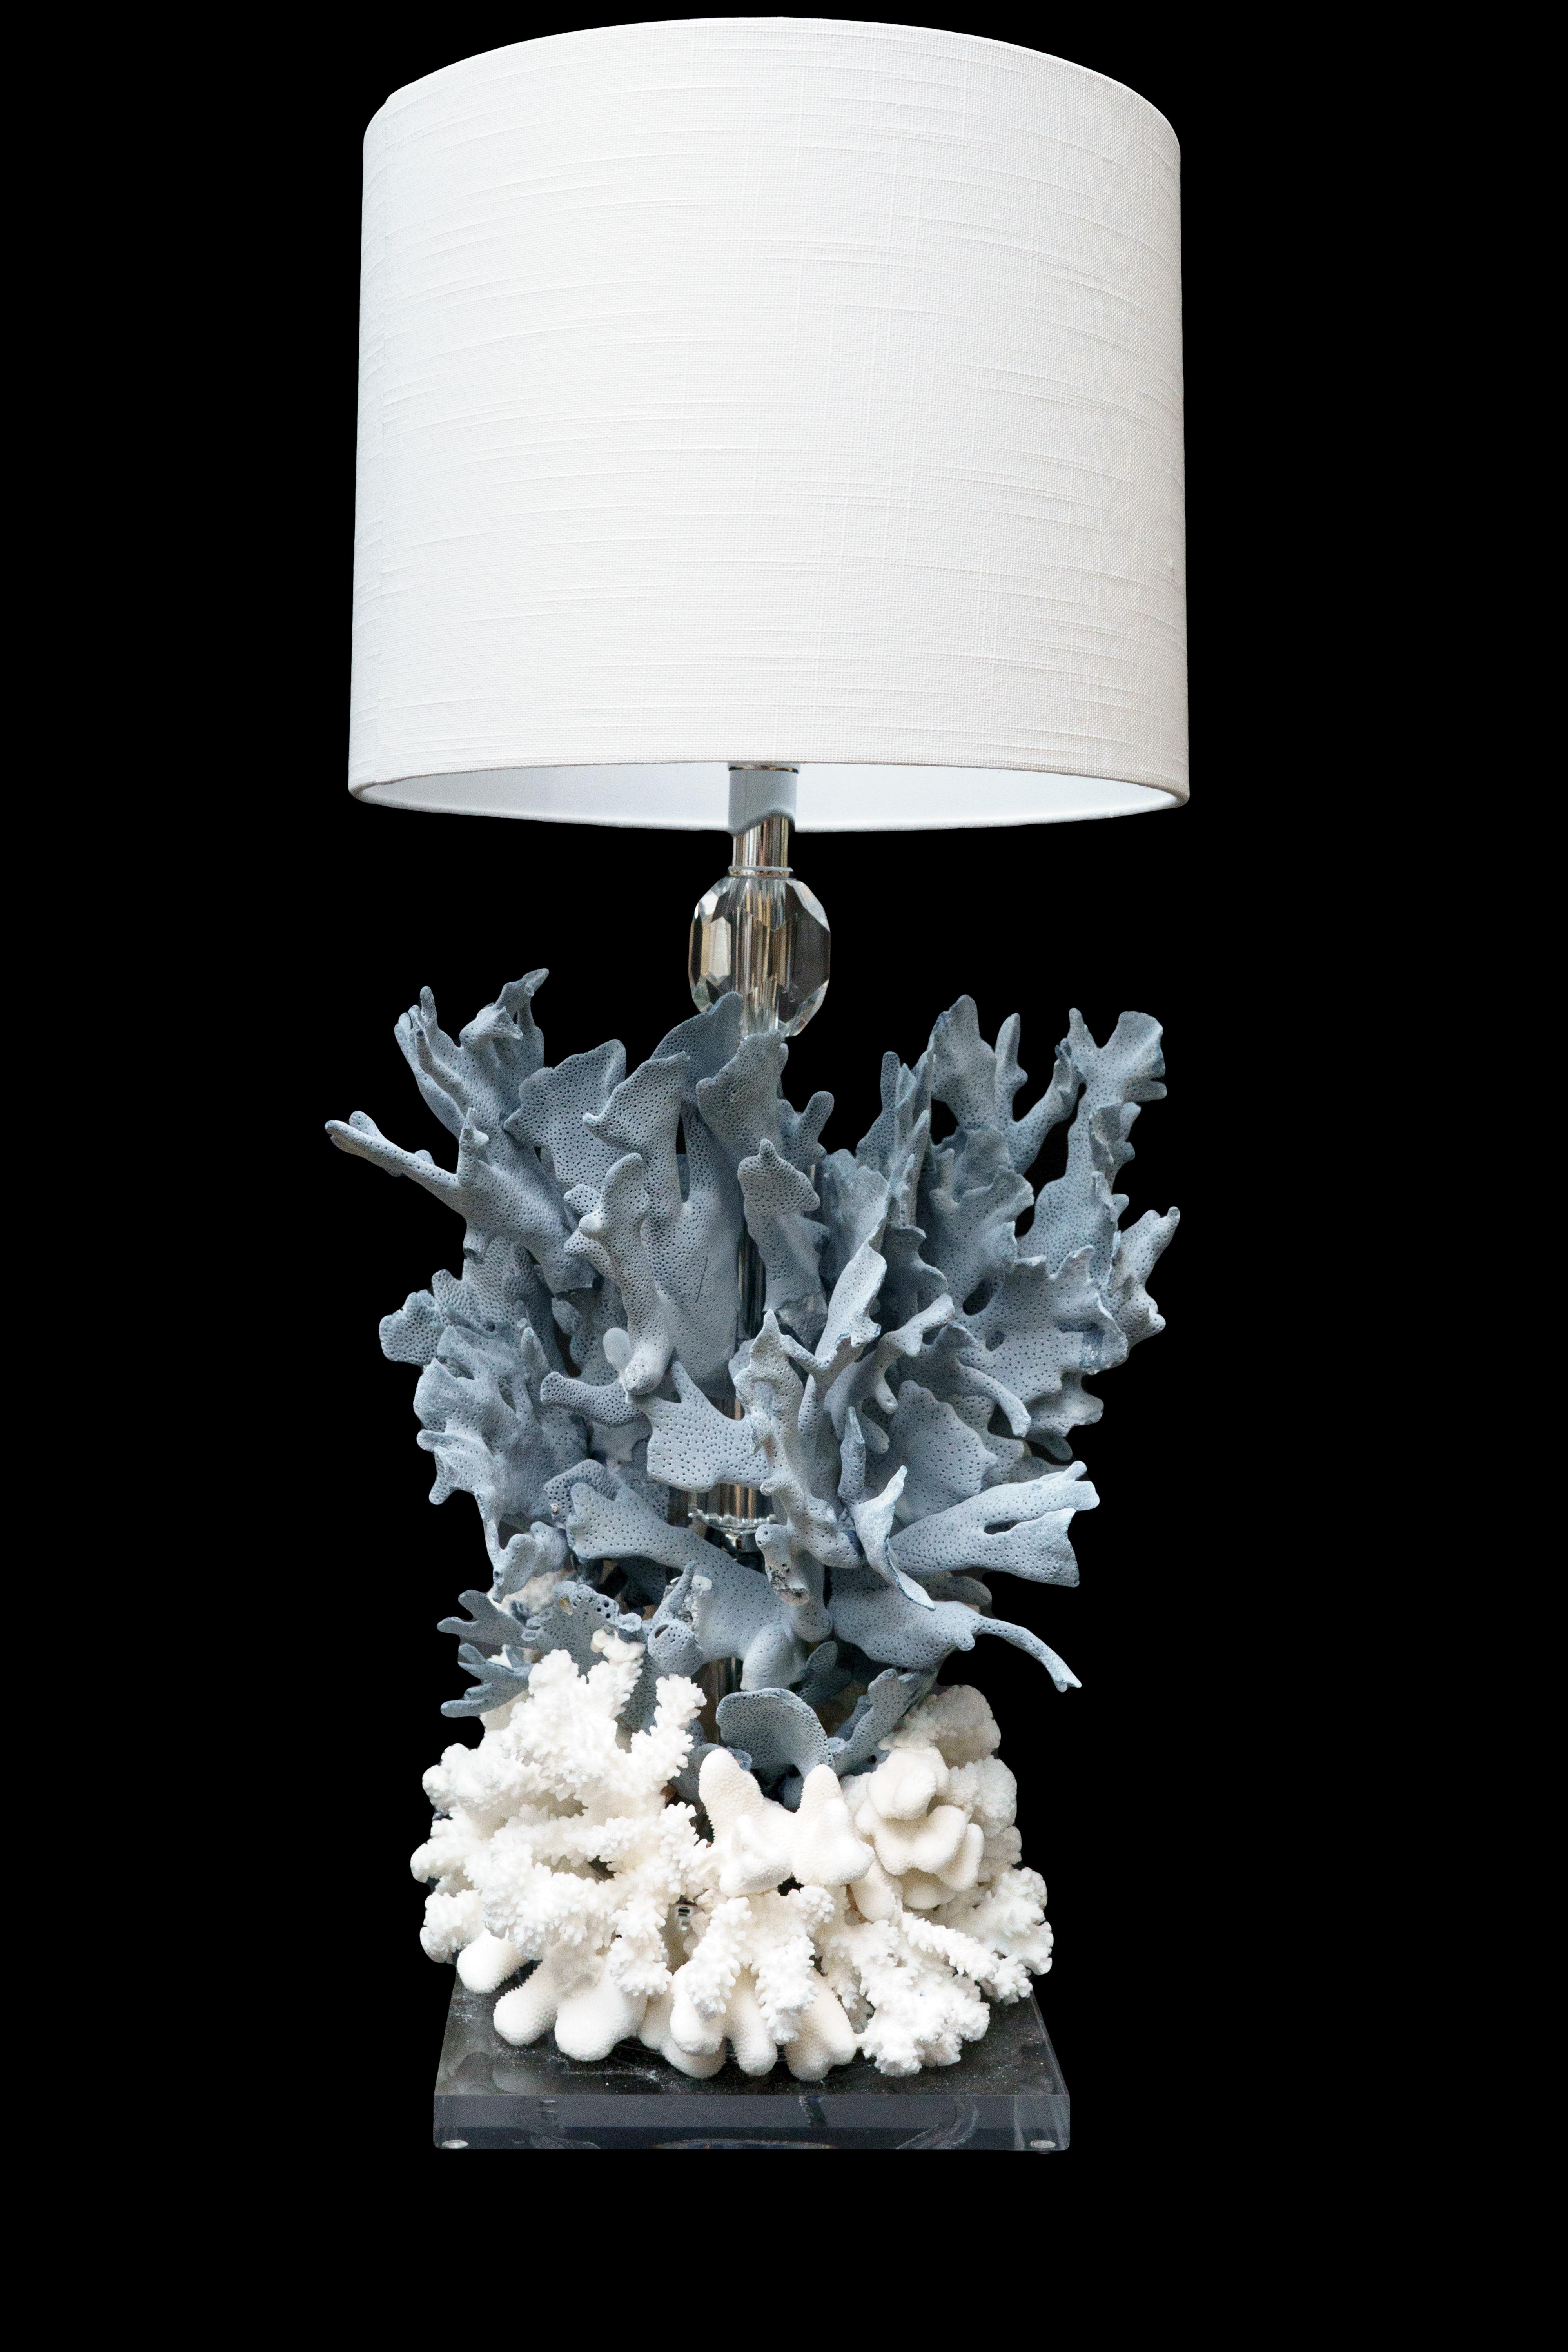 Blaue Korallen Kreation Lampe:

Maße: 12